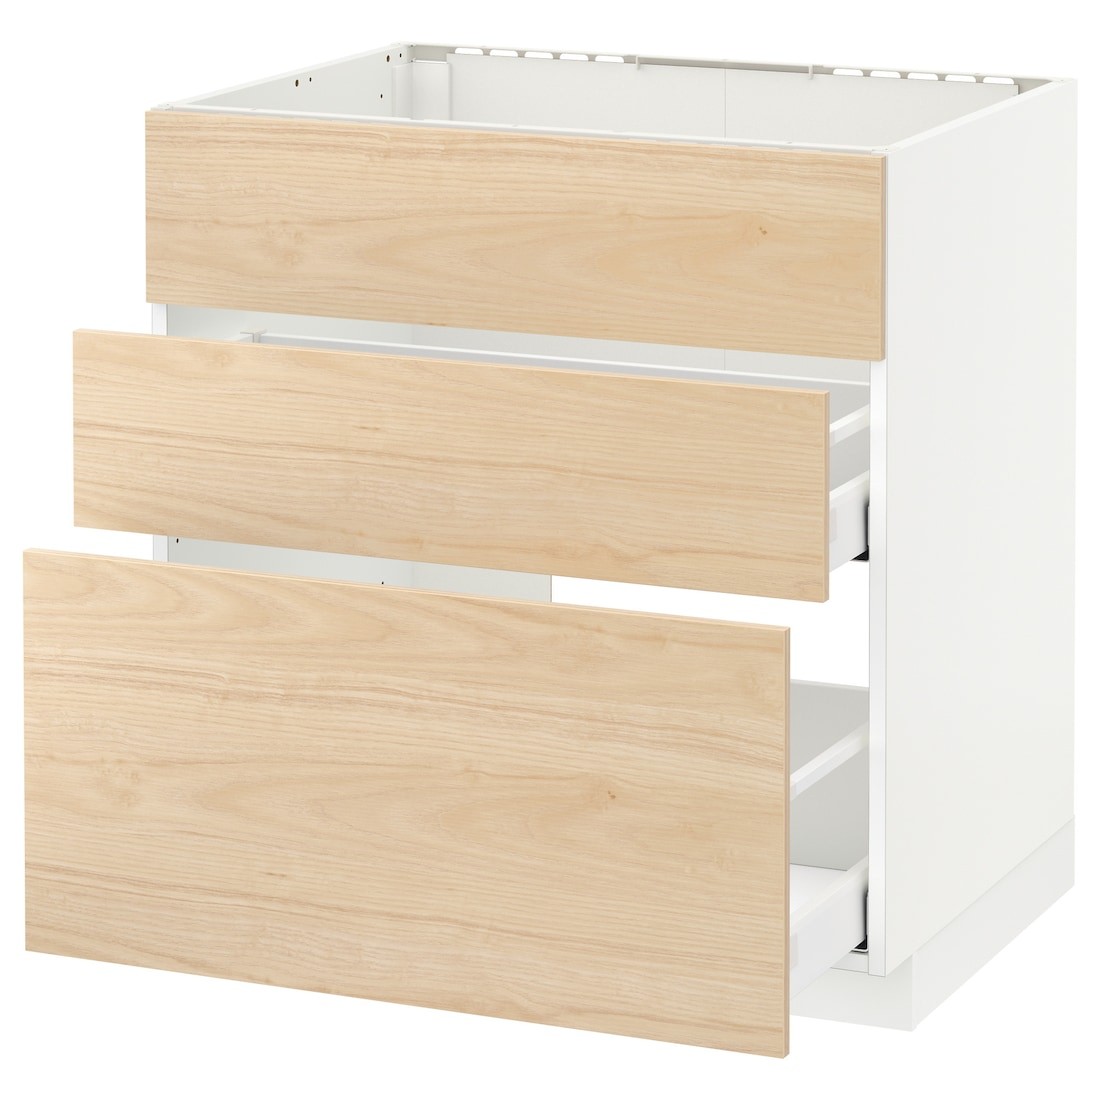 IKEA METOD МЕТОД / MAXIMERA МАКСИМЕРА Напольный шкаф под мойку с ящиками, белый / Askersund узор светлый ясень, 80x60 см 59215895 592.158.95